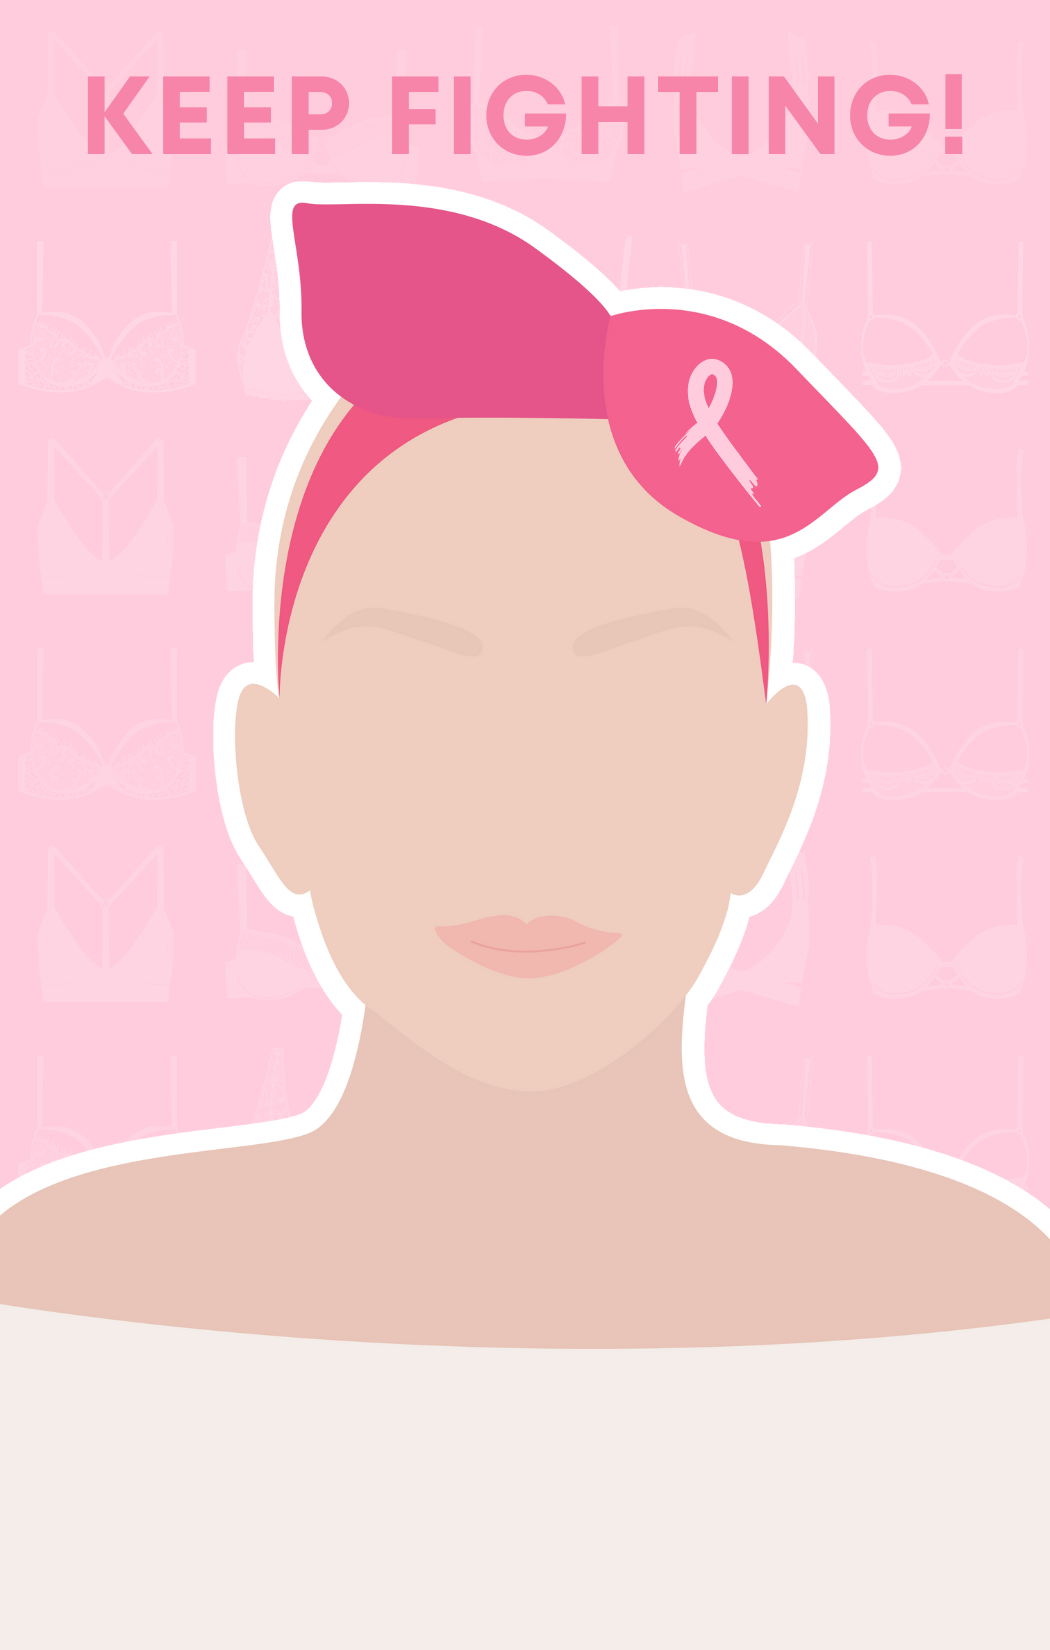 Siga luchando contra el cáncer de mama